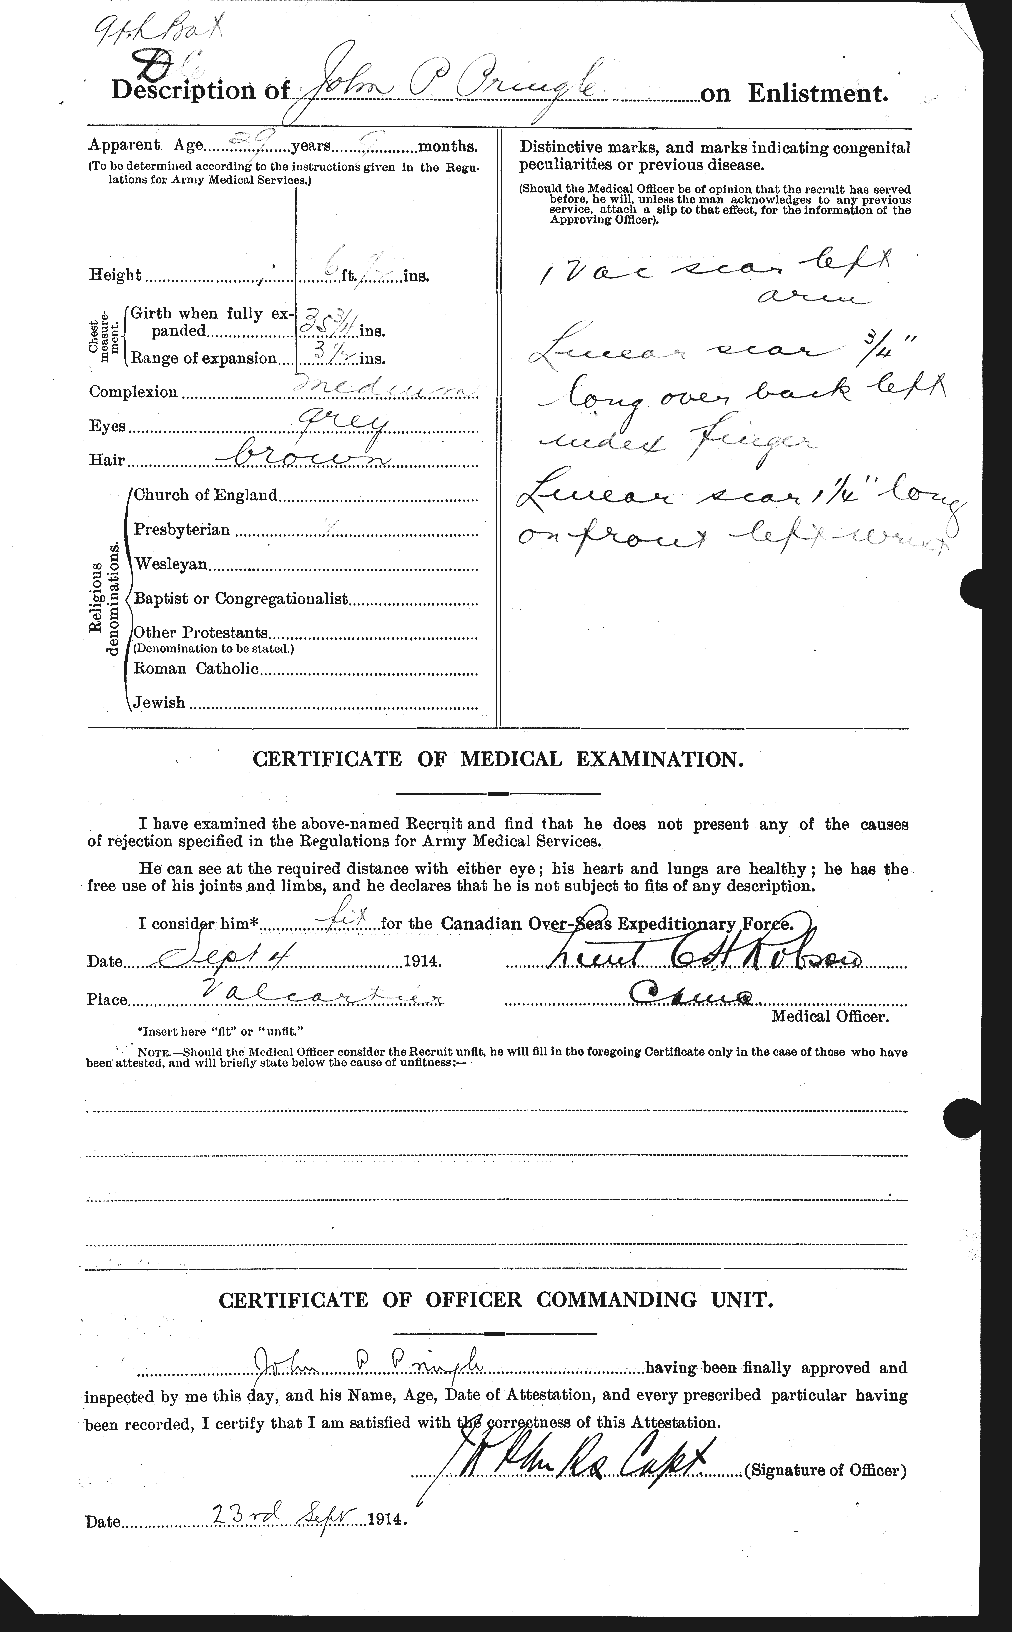 Dossiers du Personnel de la Première Guerre mondiale - CEC 587934b